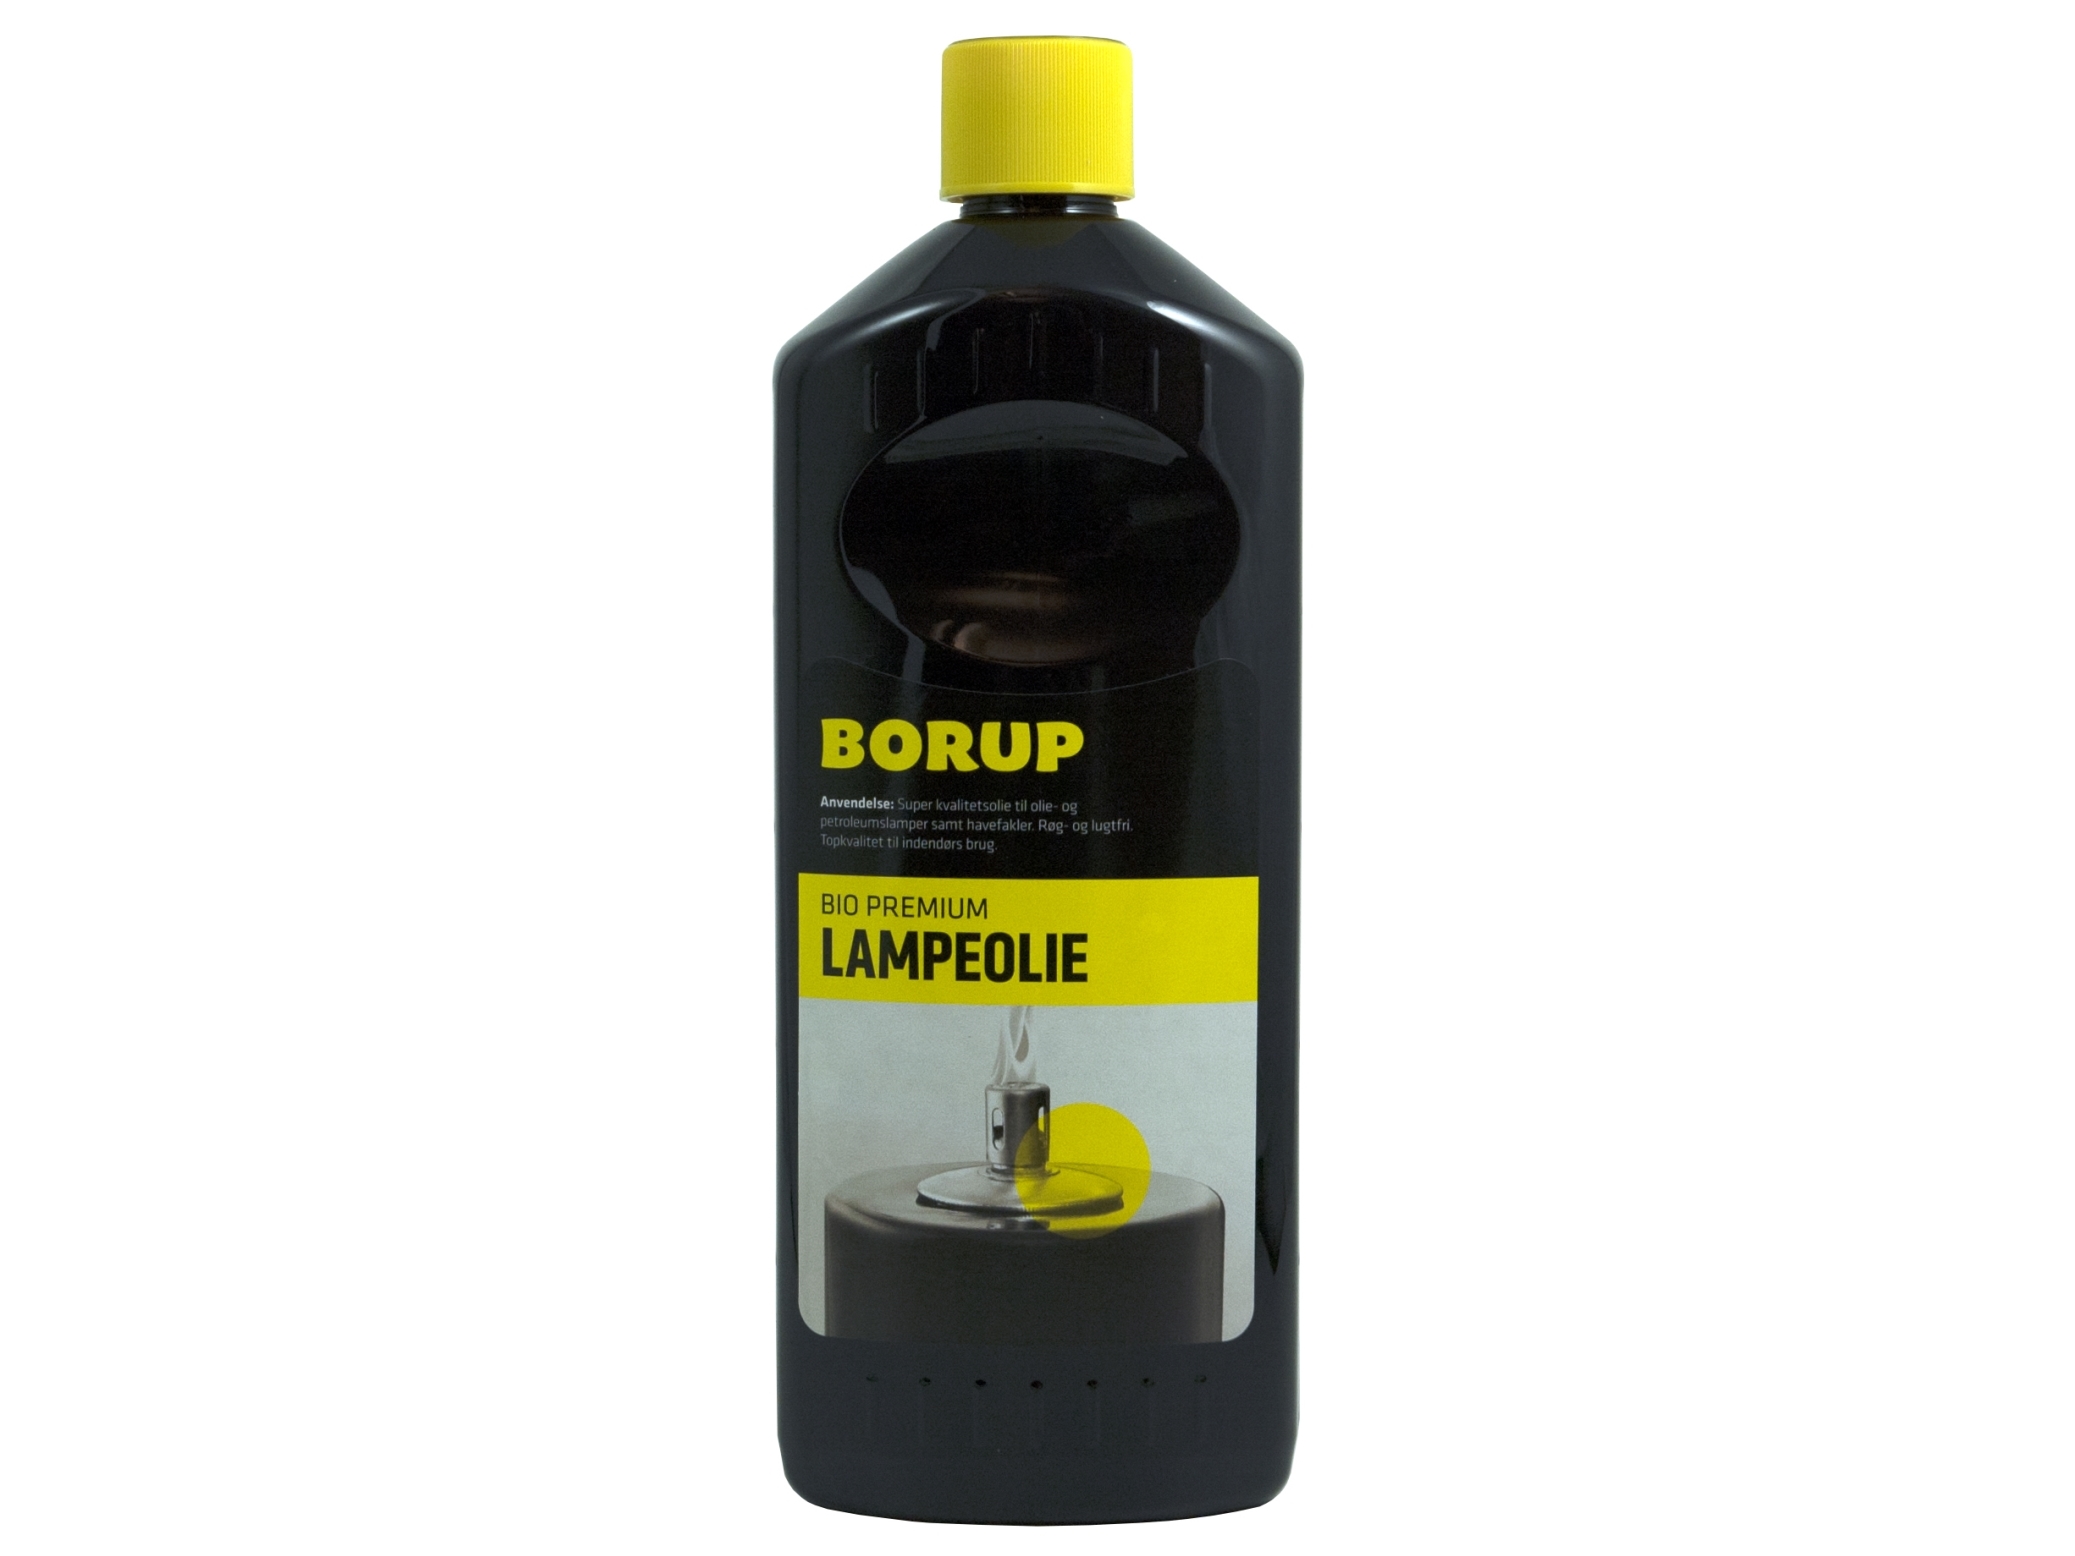 Billede af Lampeolie Bio Premium Borup Lugtsvag Højkvalitetsolie Indendørs Brug 1 Ltr,1 Ltr/Fl